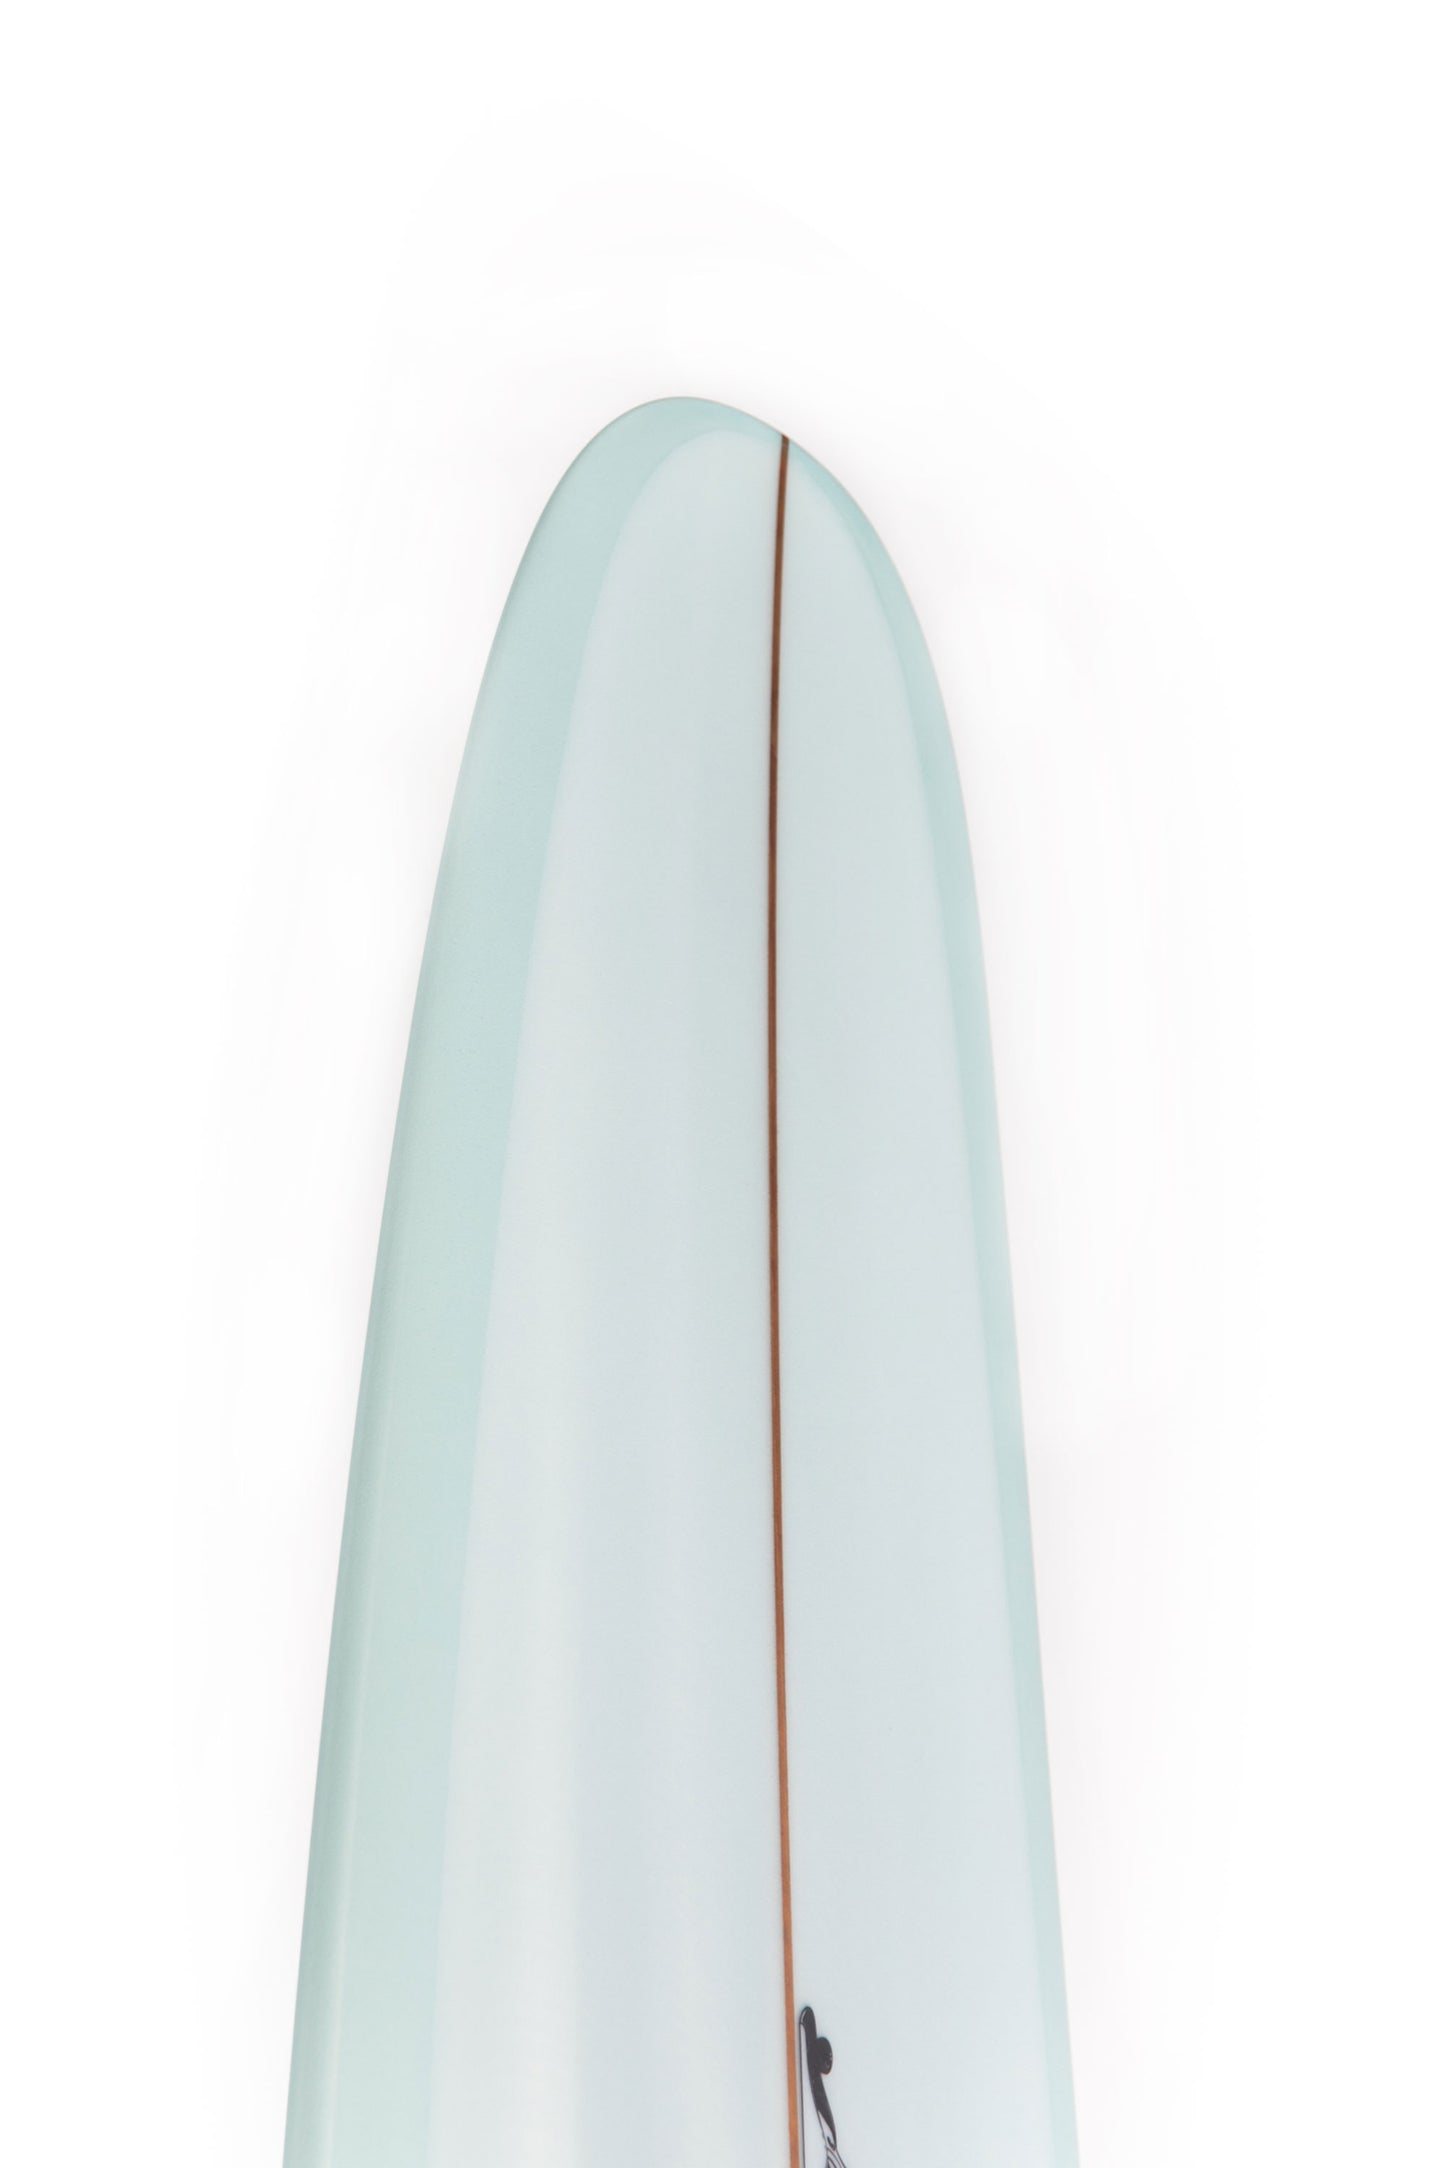 
                  
                    Pukas-Surf-Shop-Thomas-Bexon-Surfboards-Wizl-Thomas-Bexon-9_4_-WIZL94LAVENDER
                  
                